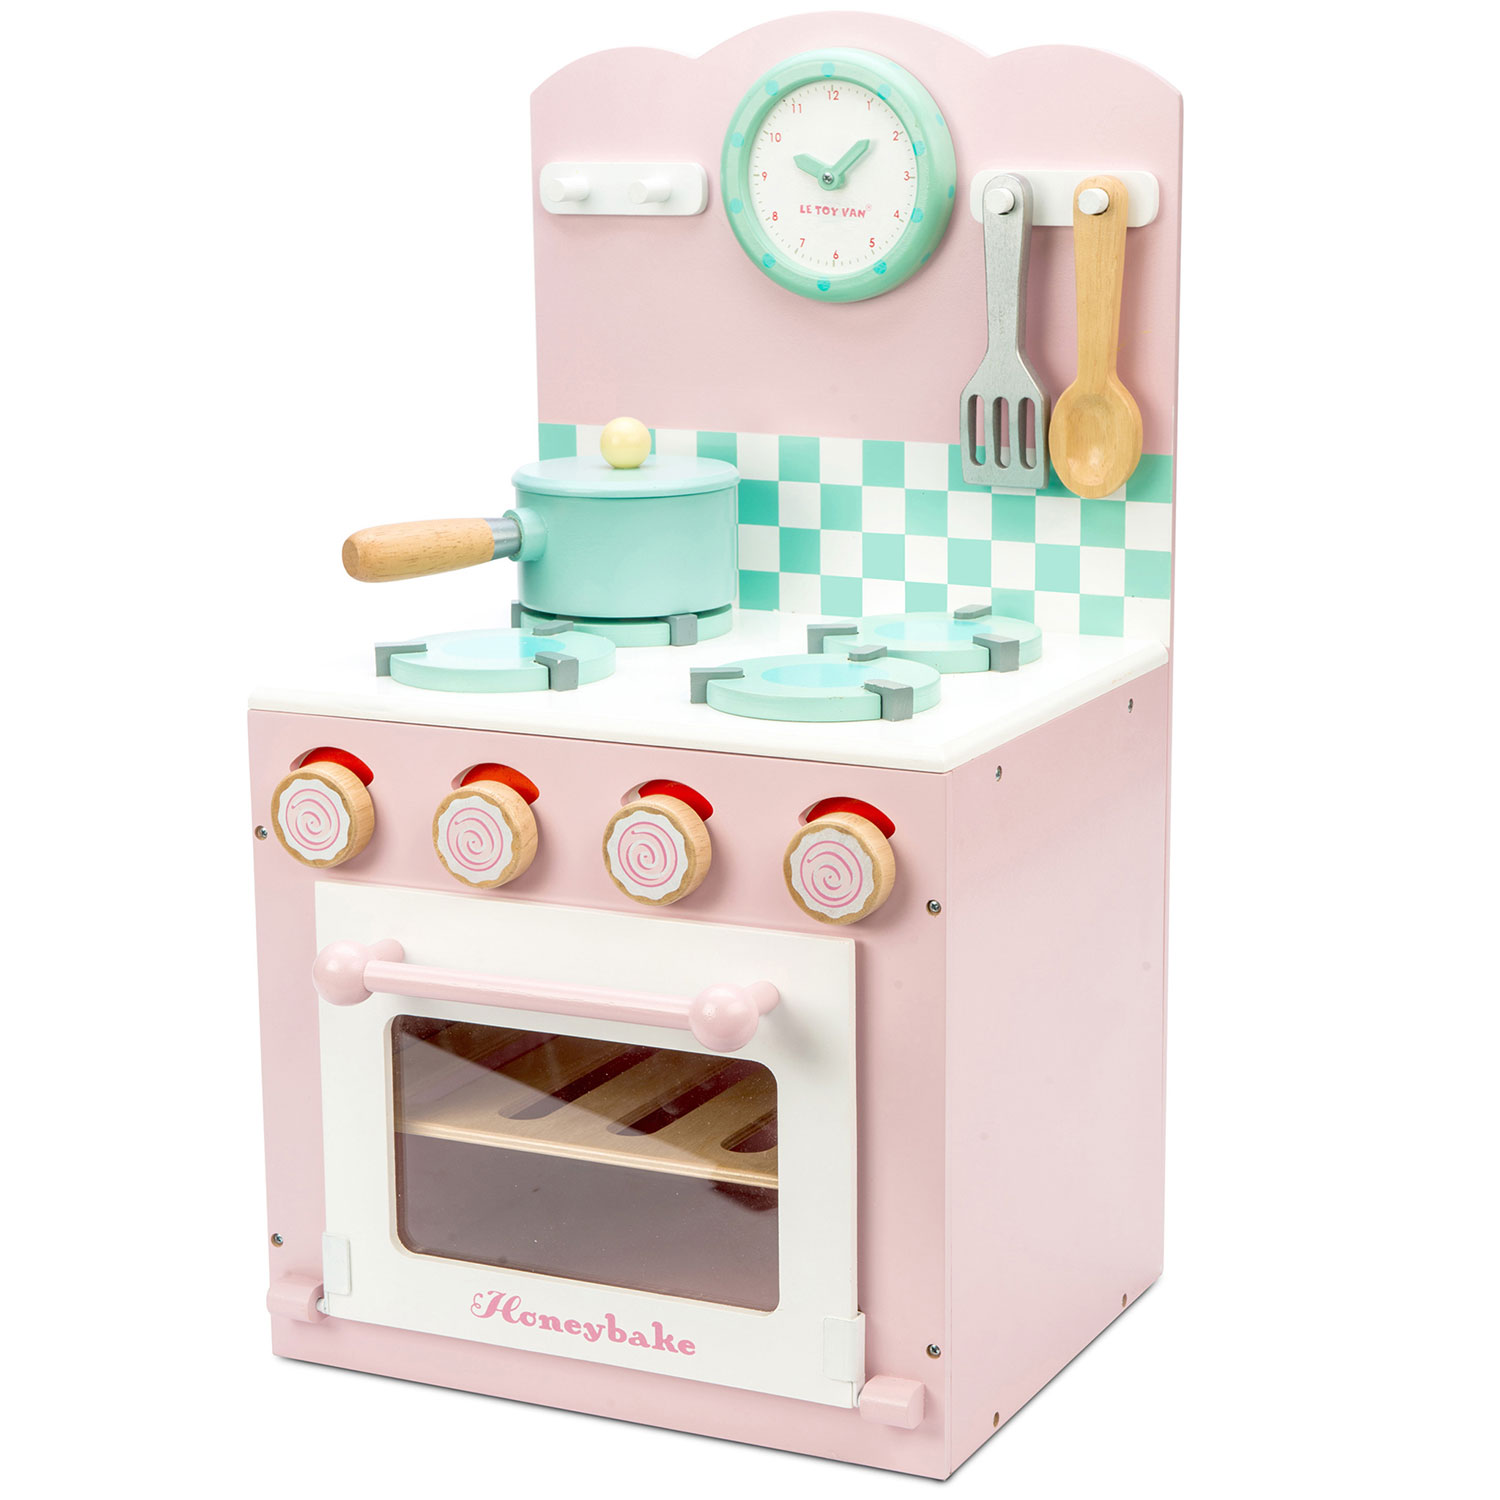 Backofen und Kochfeld Pink / Pink Oven & Hob Pink